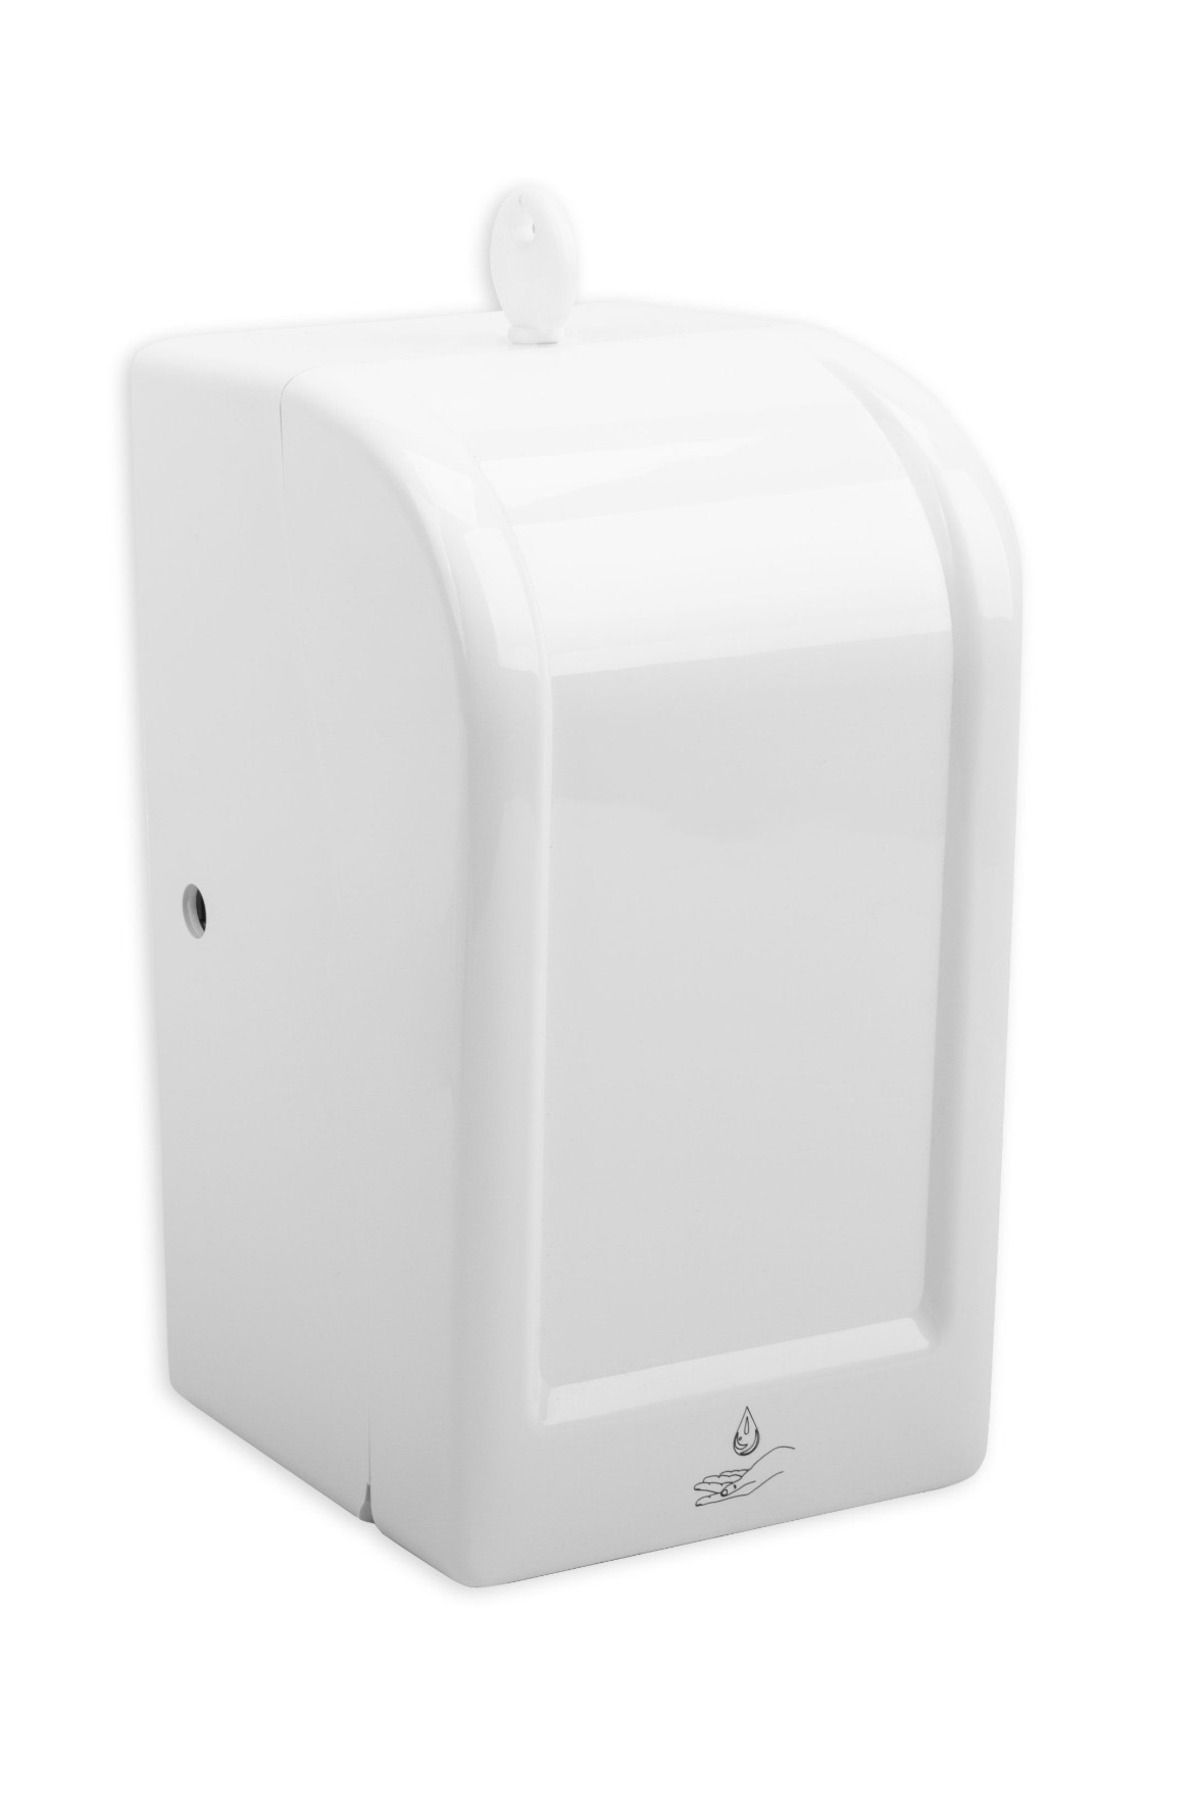 KG-GOLDPAPER Beyaz Renk Üstten Dolmalı Hazneli 700 ML Sensörlü Elektrikli ve Pilli Köpük Sabun Aparat Dispenseri